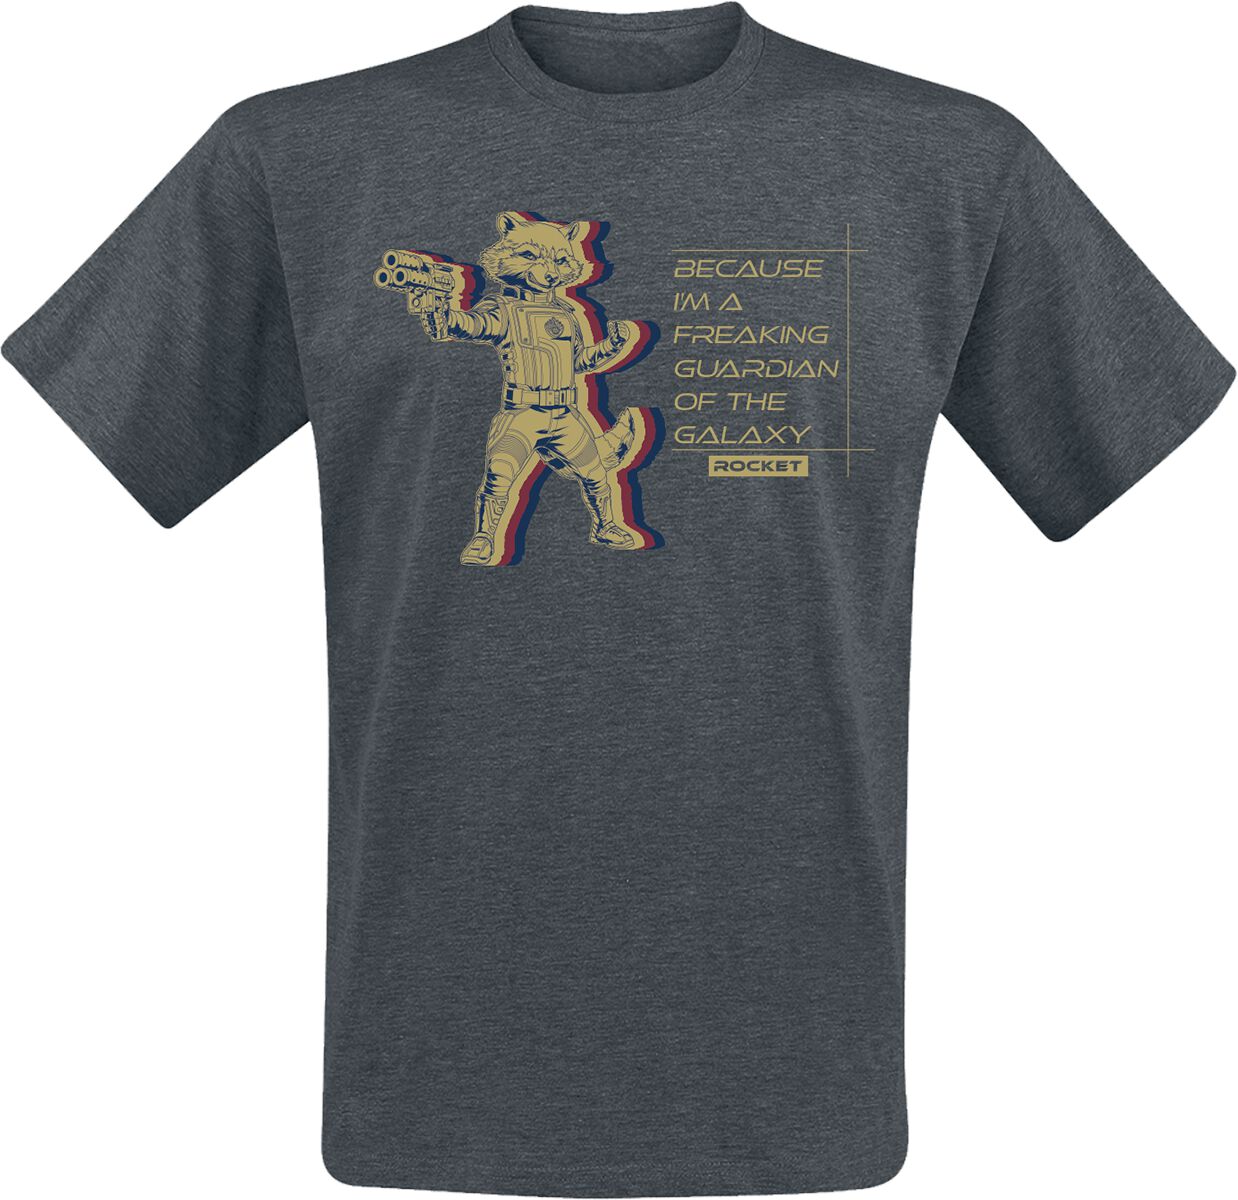 Guardians Of The Galaxy - Marvel T-Shirt - Vol. 3 - Rocket - S bis XXL - für Männer - Größe S - grau  - EMP exklusives Merchandise!